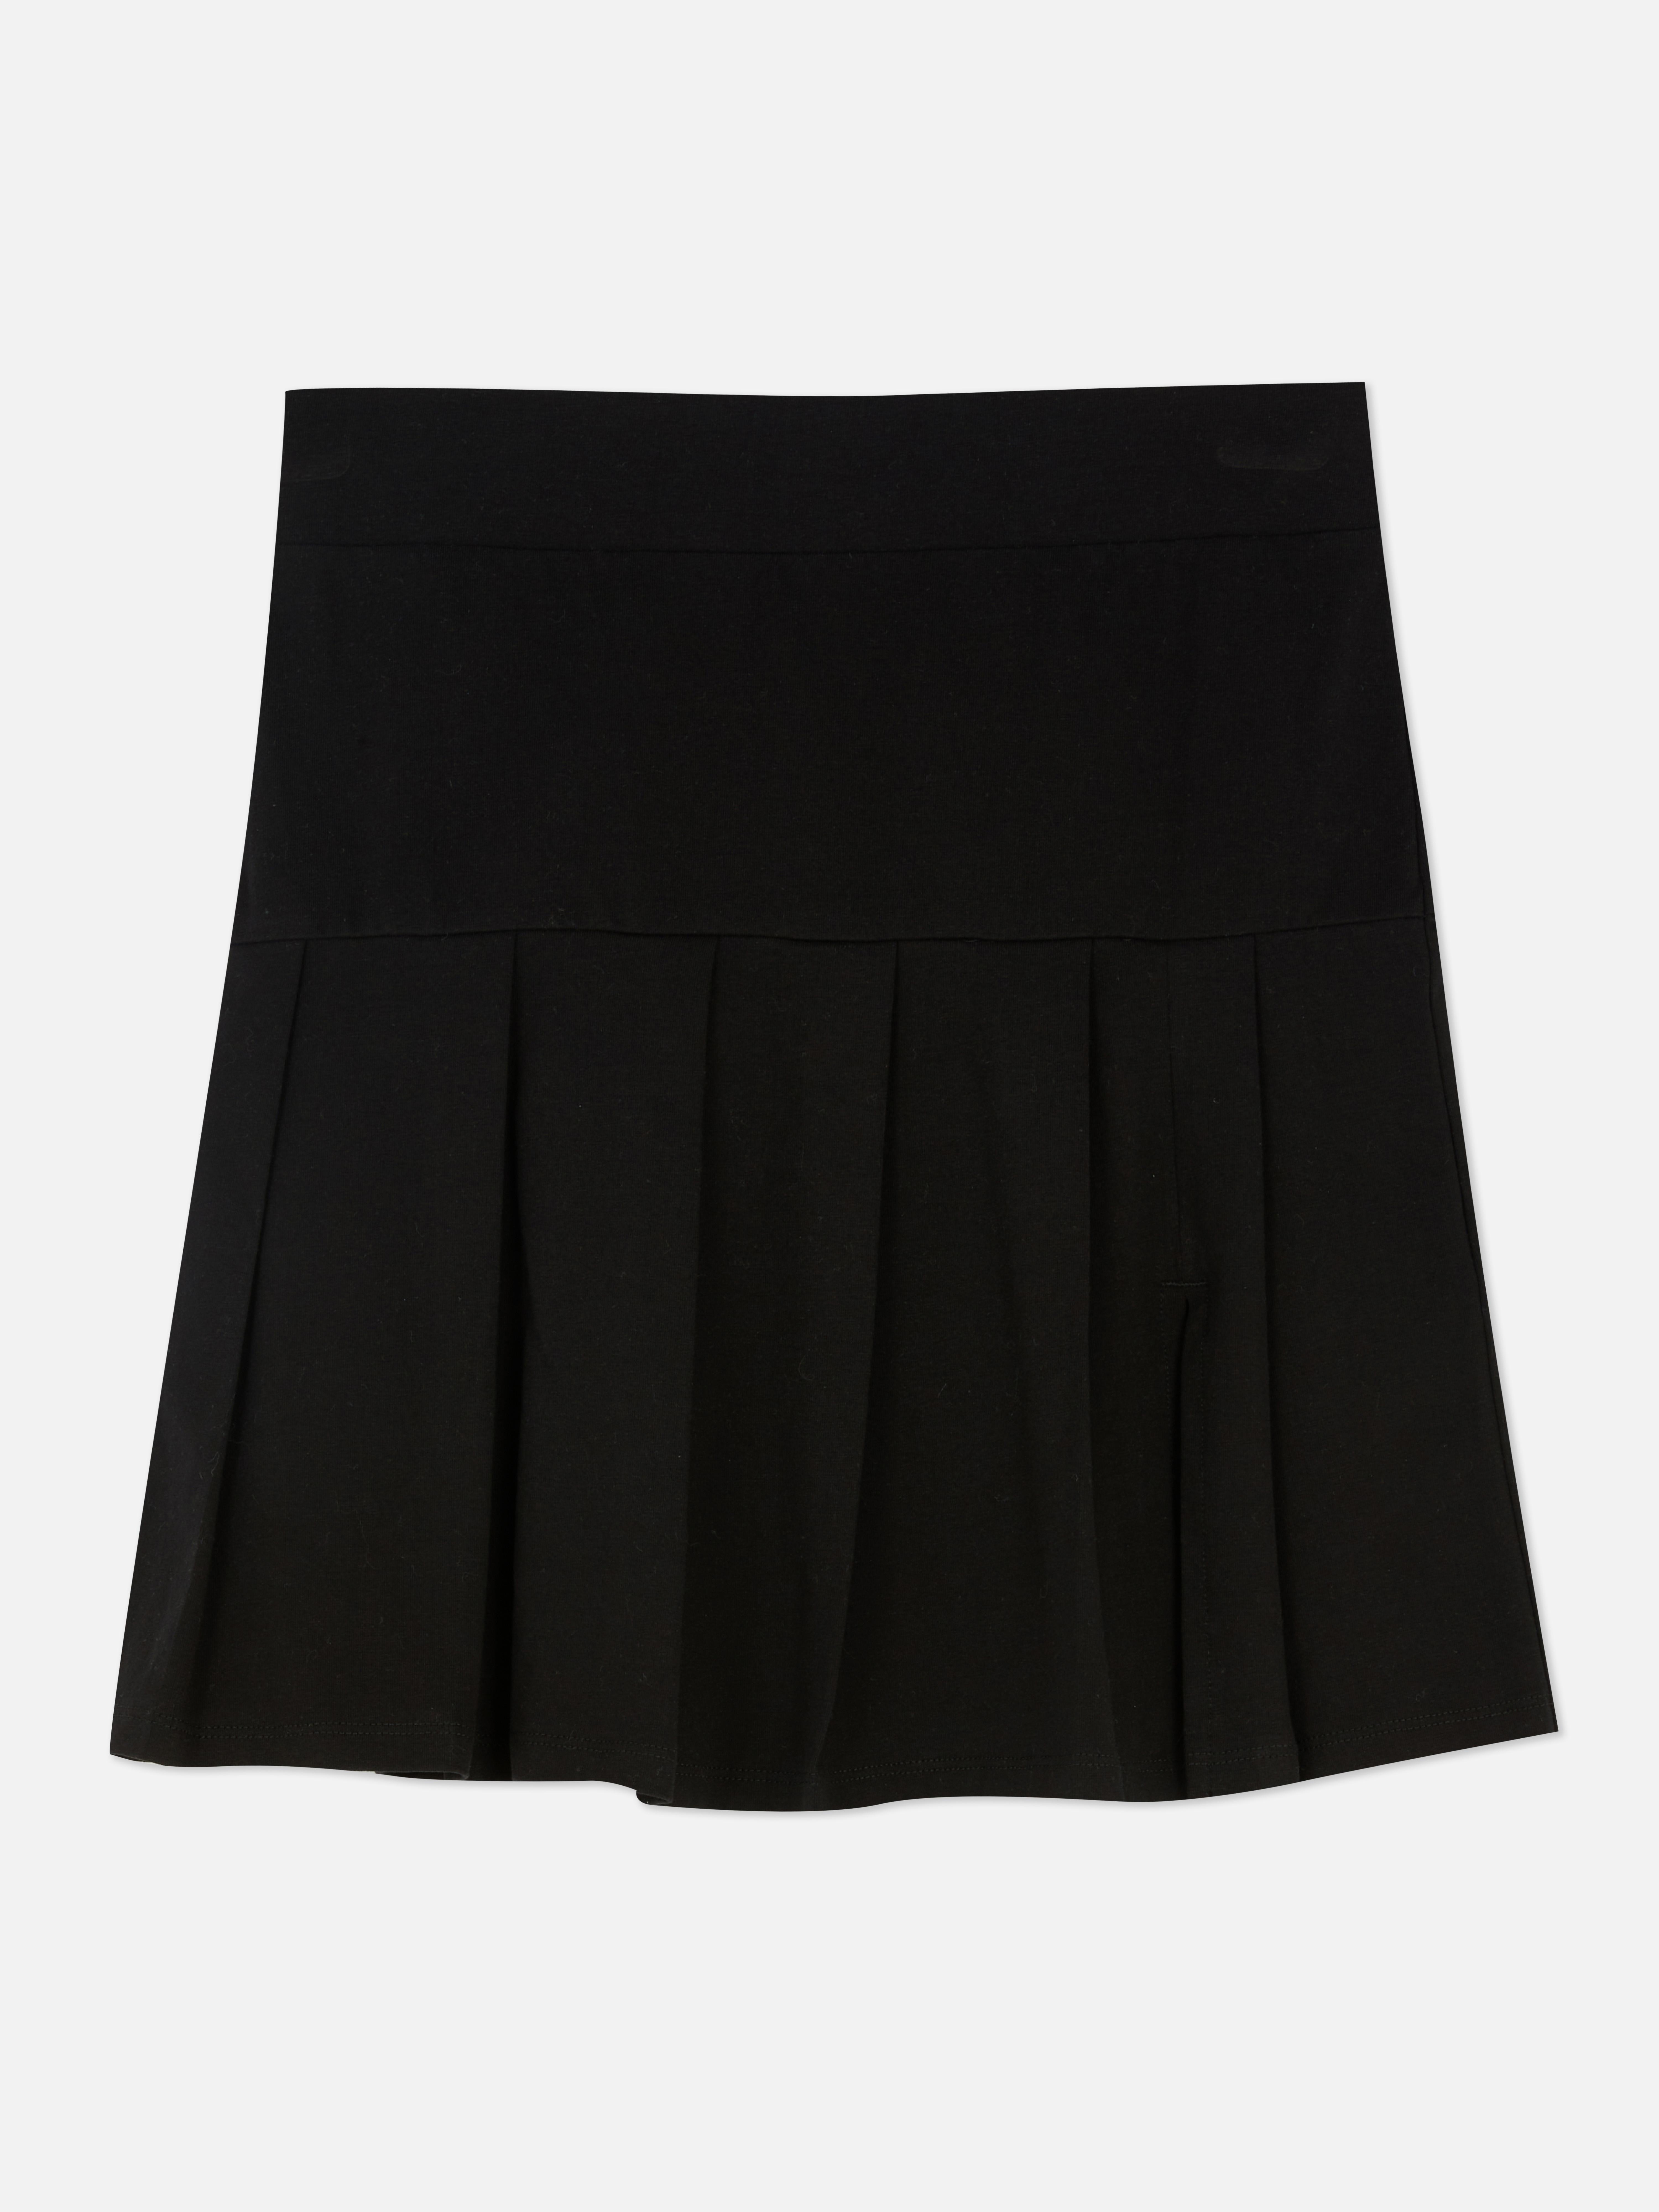 Tennis Skirt | Women's Tops | Women's Style | Our Womenswear ...